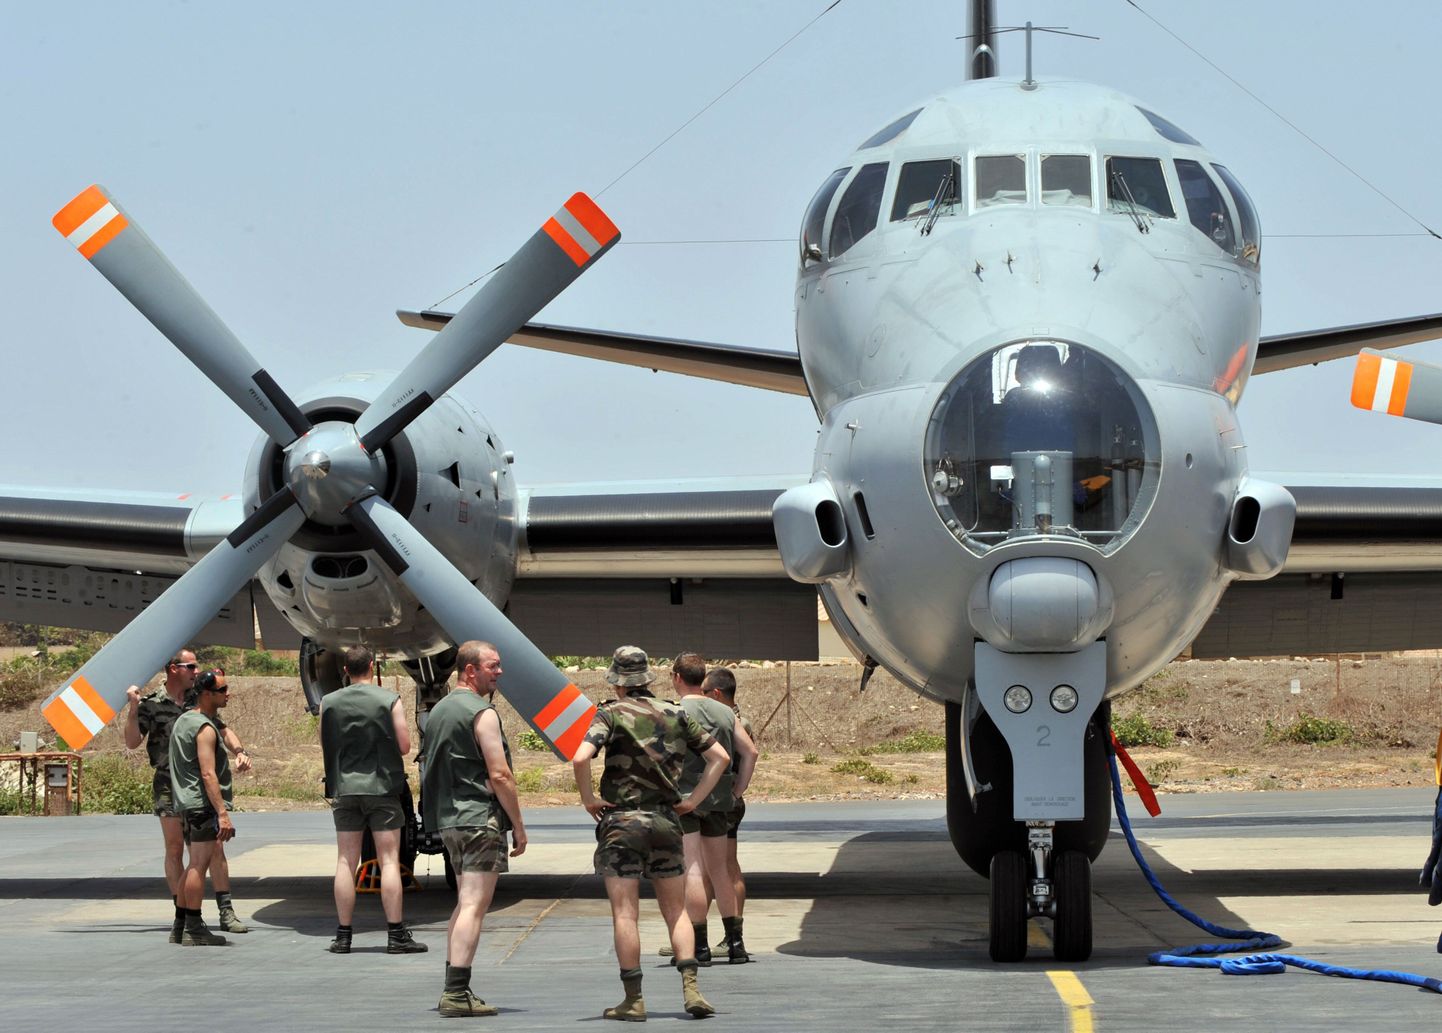 Prantsuse mereväe patrull-lennukid Dakari lennubaasis.